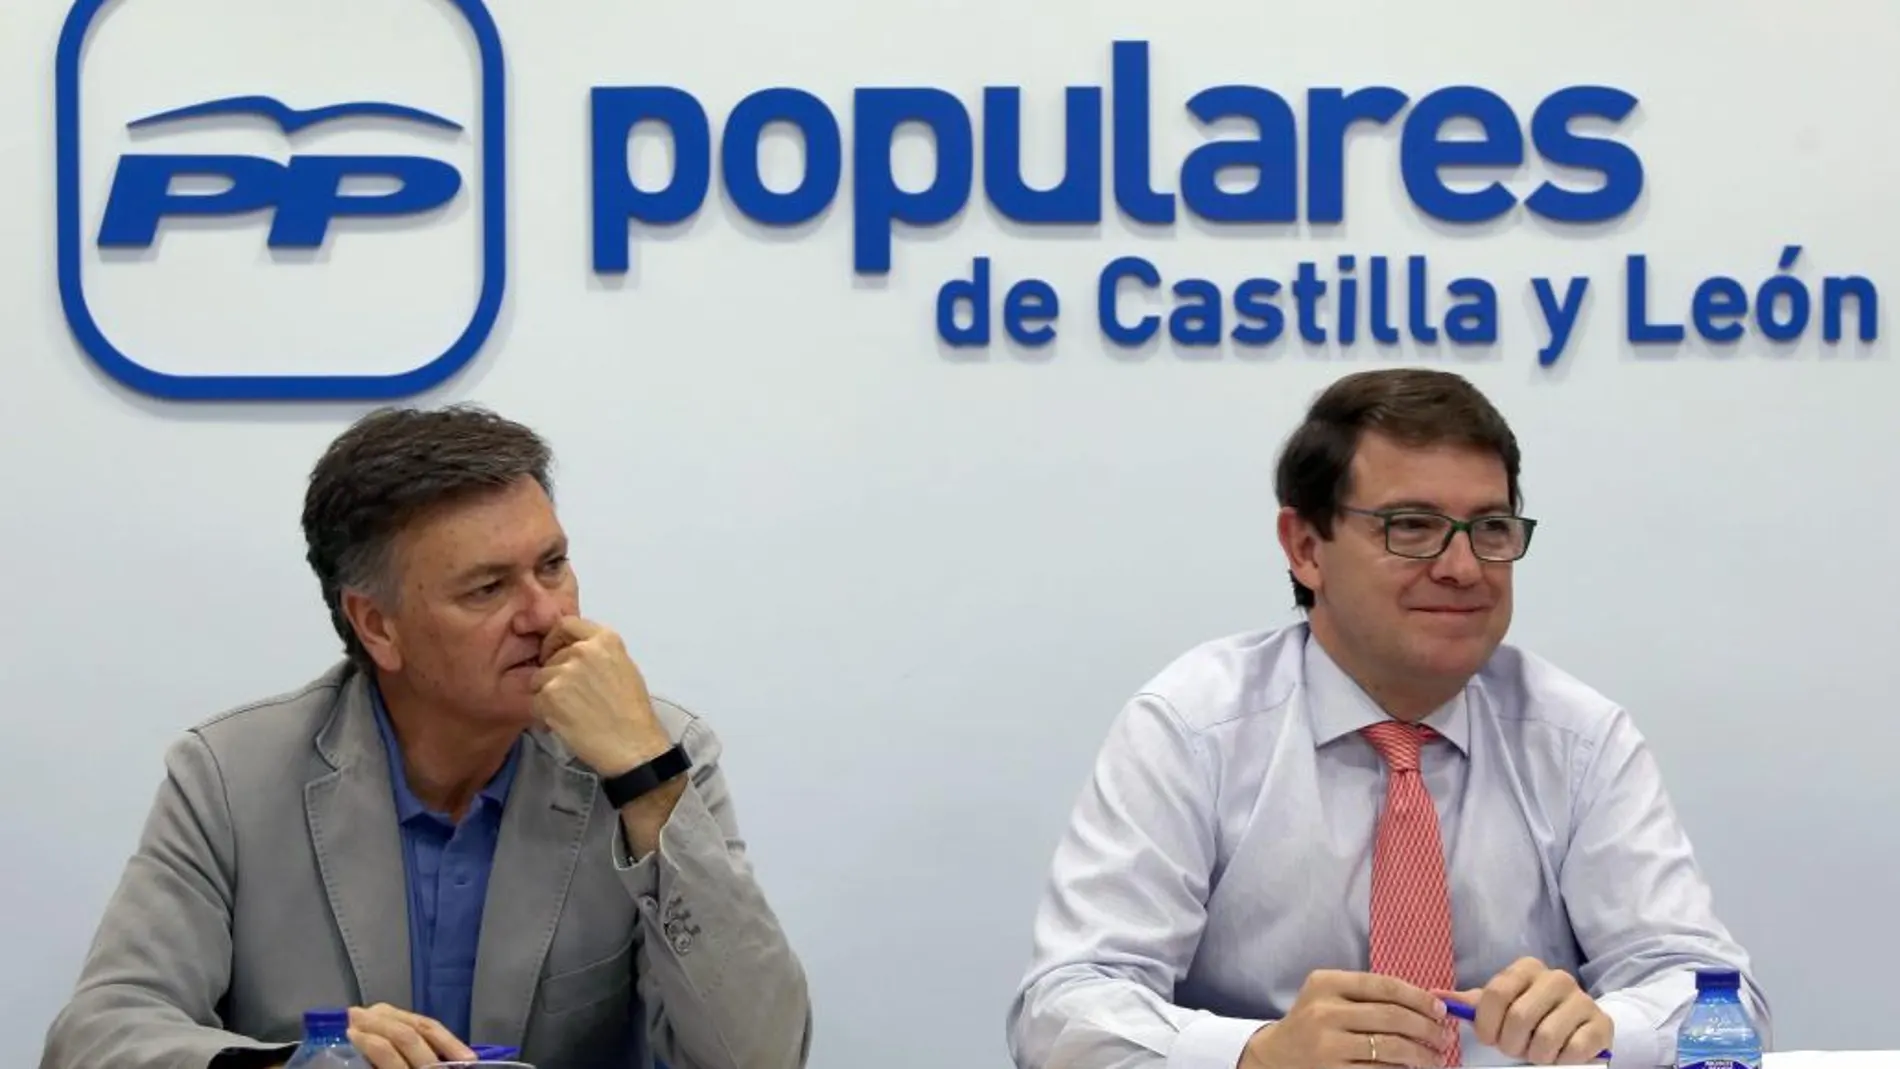 El presidente del PP regional, Alfonso Fernández Mañueco, junto al secretario general, Francisco Vázquez